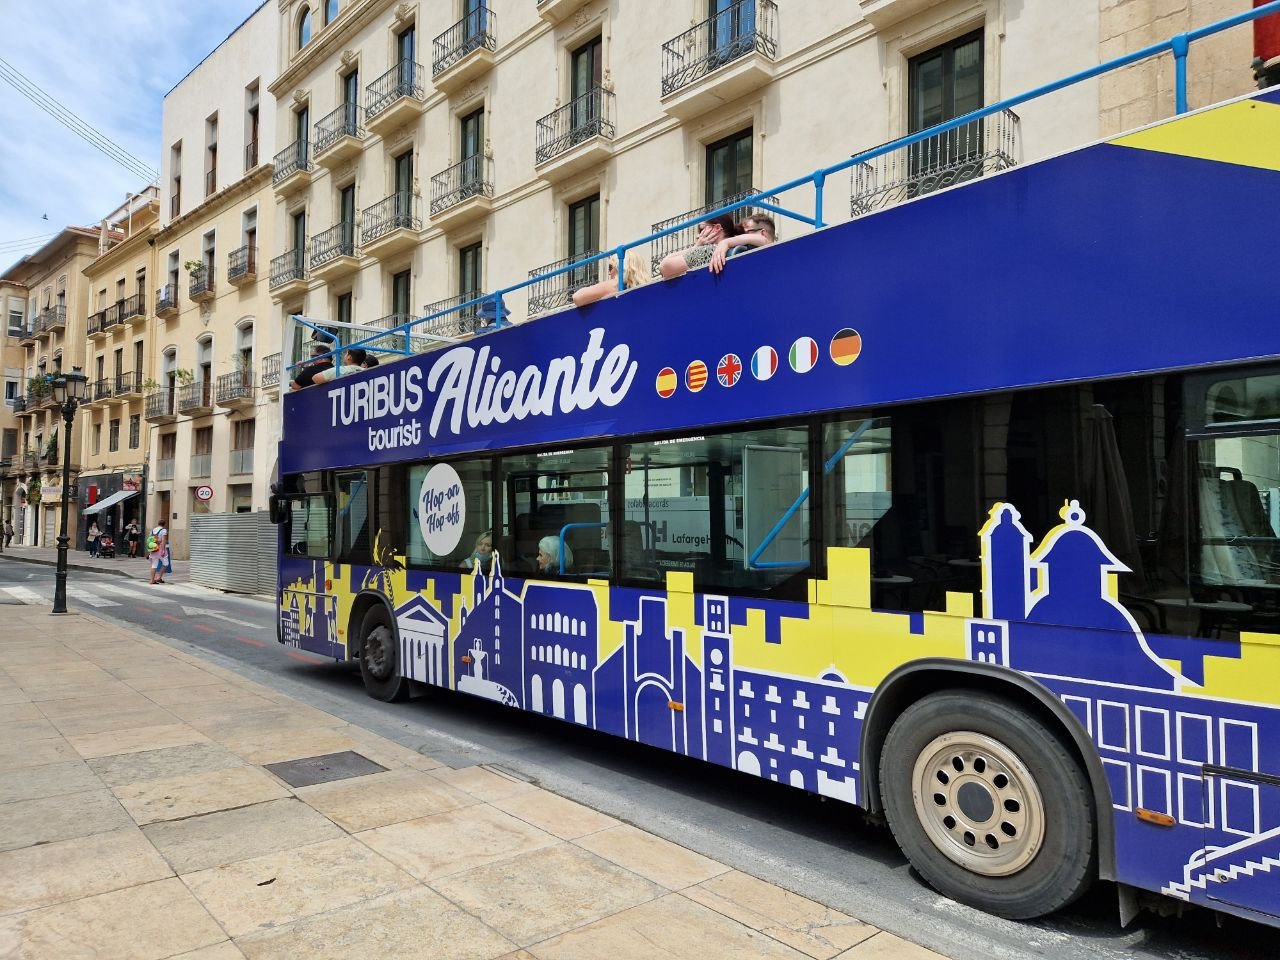 alicante city tour bus